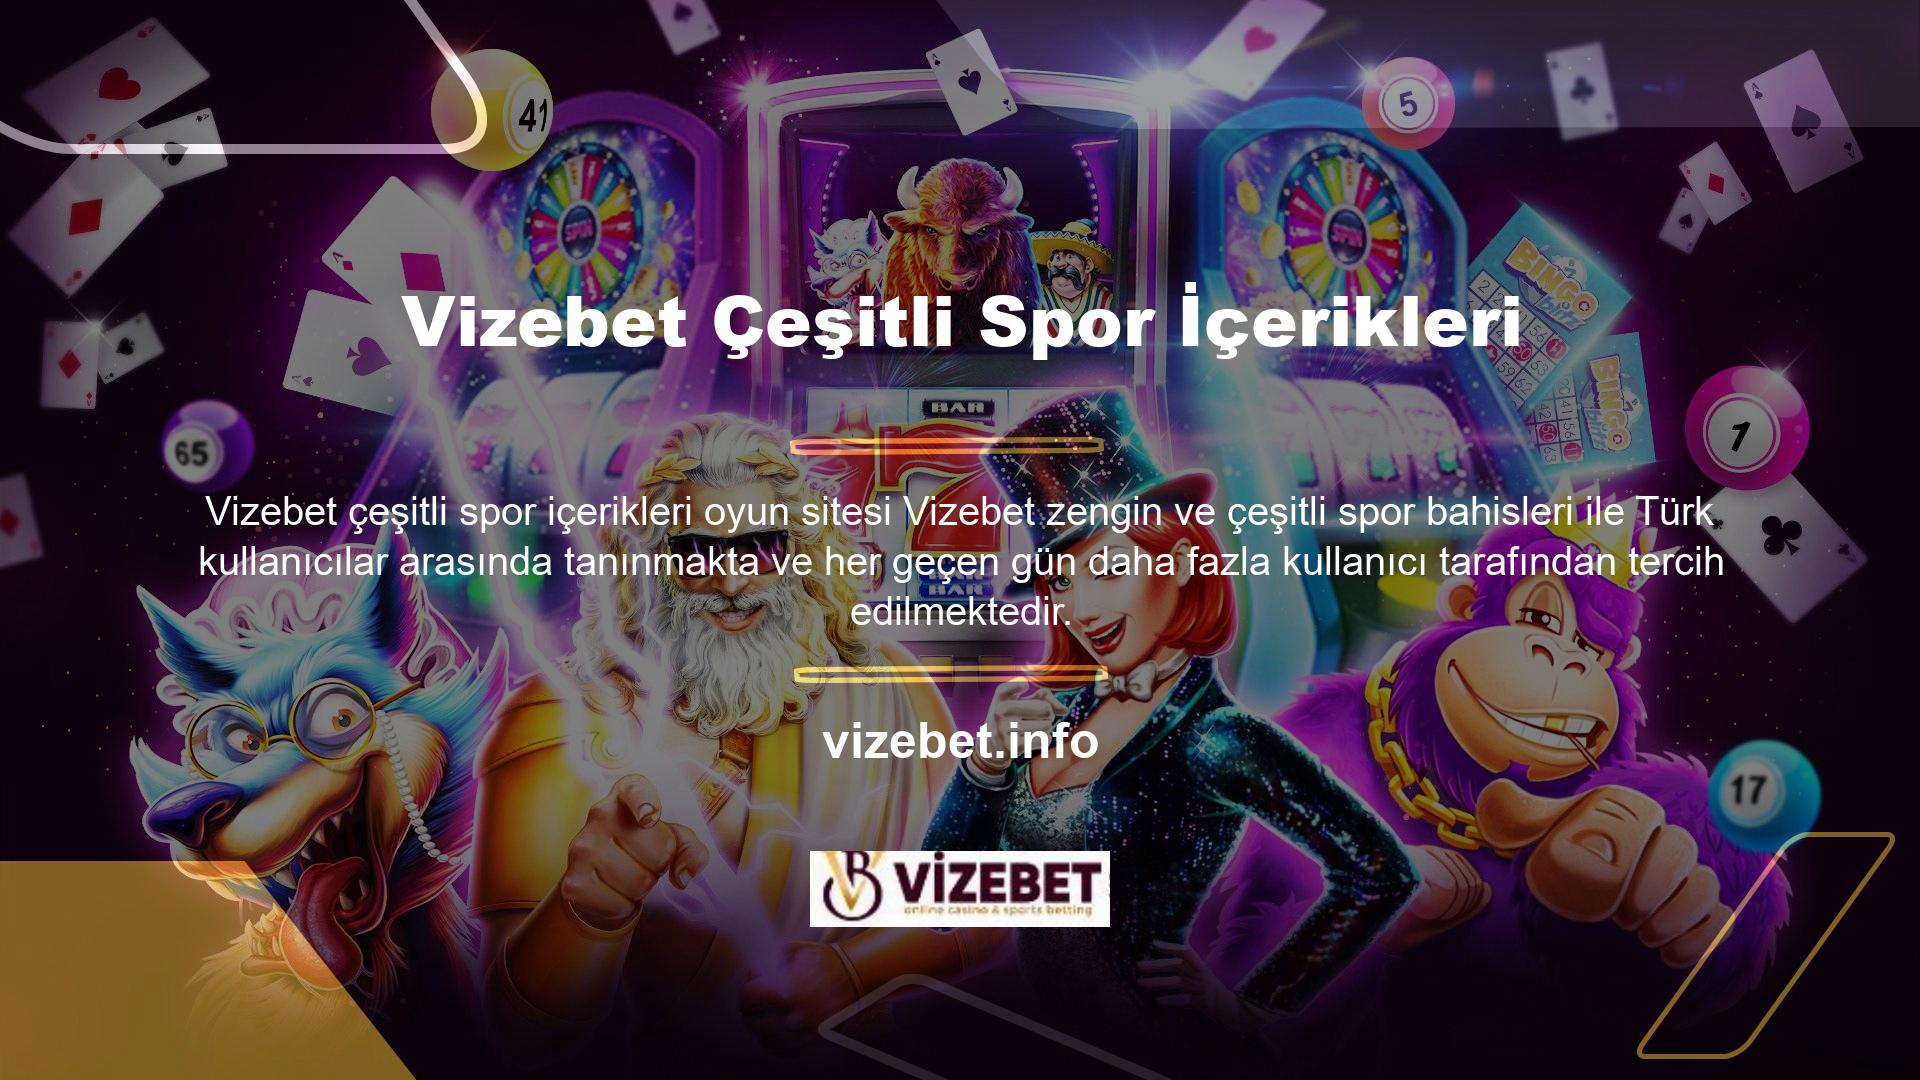 Türk kullanıcıların ilgisini gören Vizebet tüm kullanıcıların siteye erişim sorunu yaşamadan istedikleri oyunları oynayabilmeleri için yeni bir adres oluşturdu